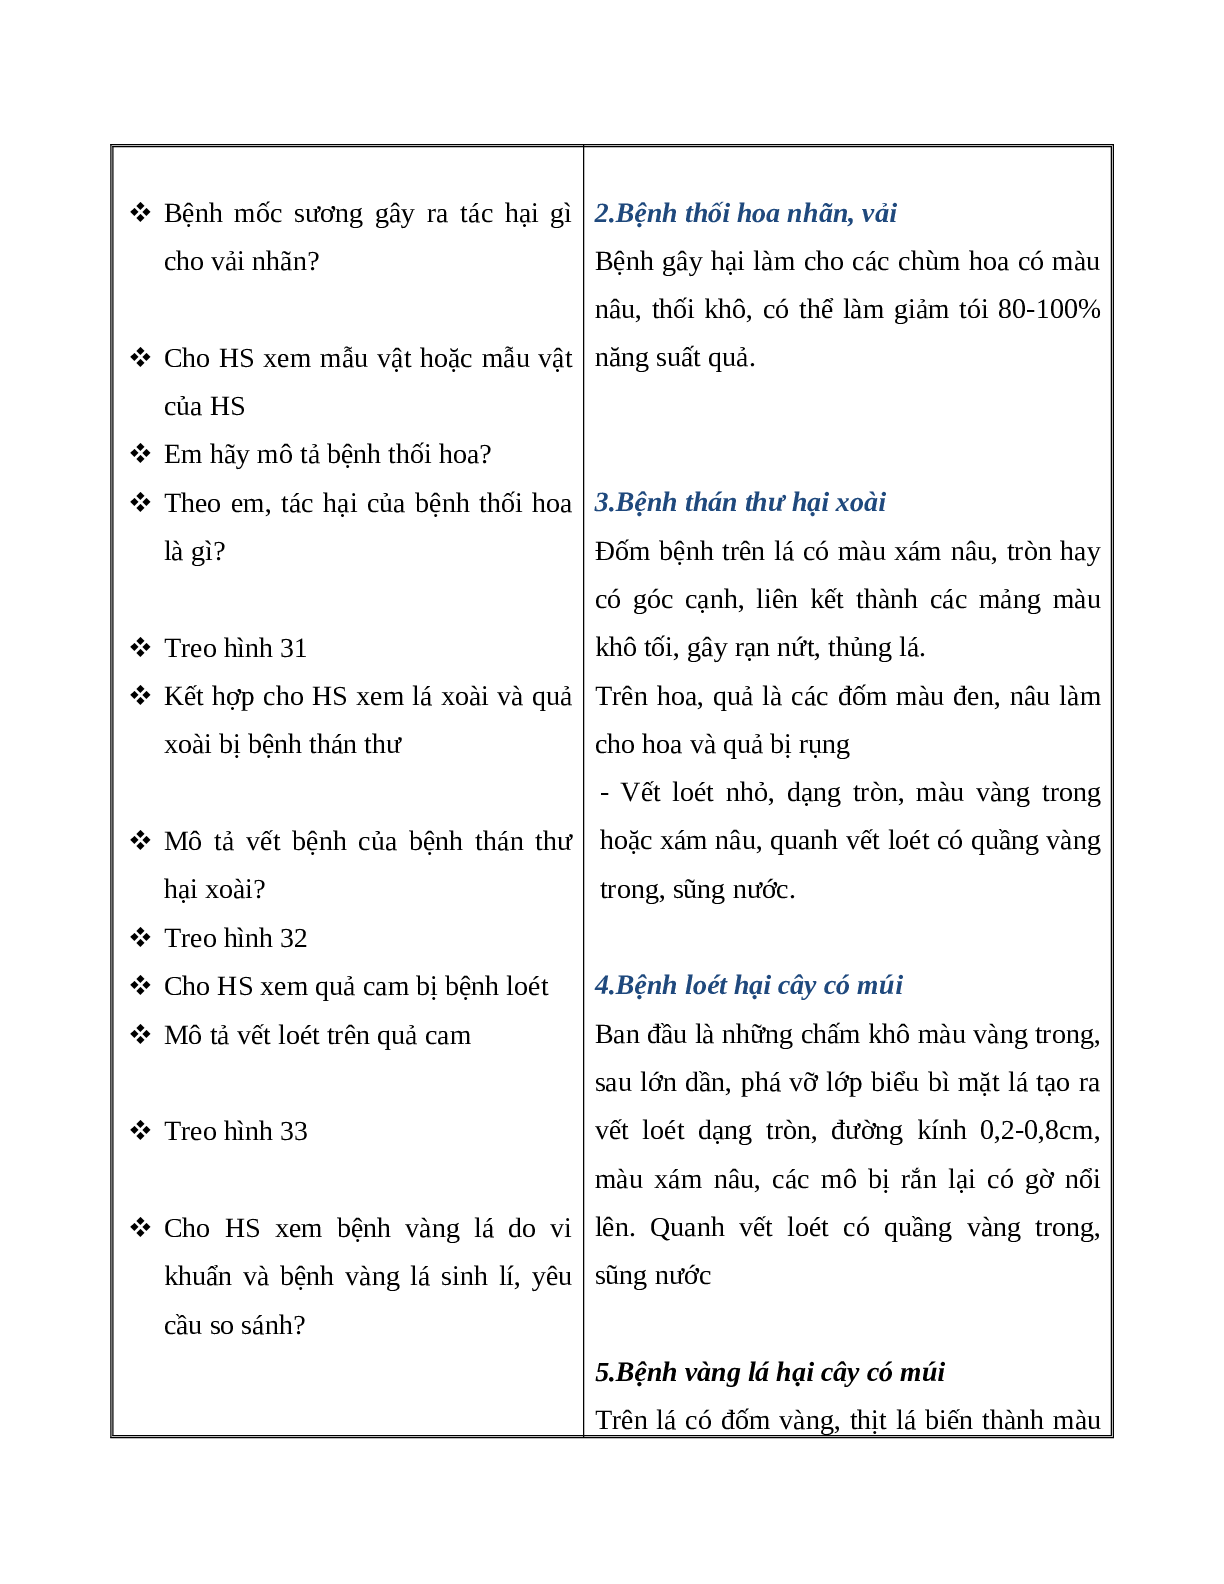 GIÁO ÁN CÔNG NGHỆ 9 BÀI 12: THỰC HÀNH NHẬN BIẾT MỘT SỐ LOẠI SÂU BỆNH HẠI CÂY ĂN QUẢ (T2) MỚI NHẤT (trang 3)